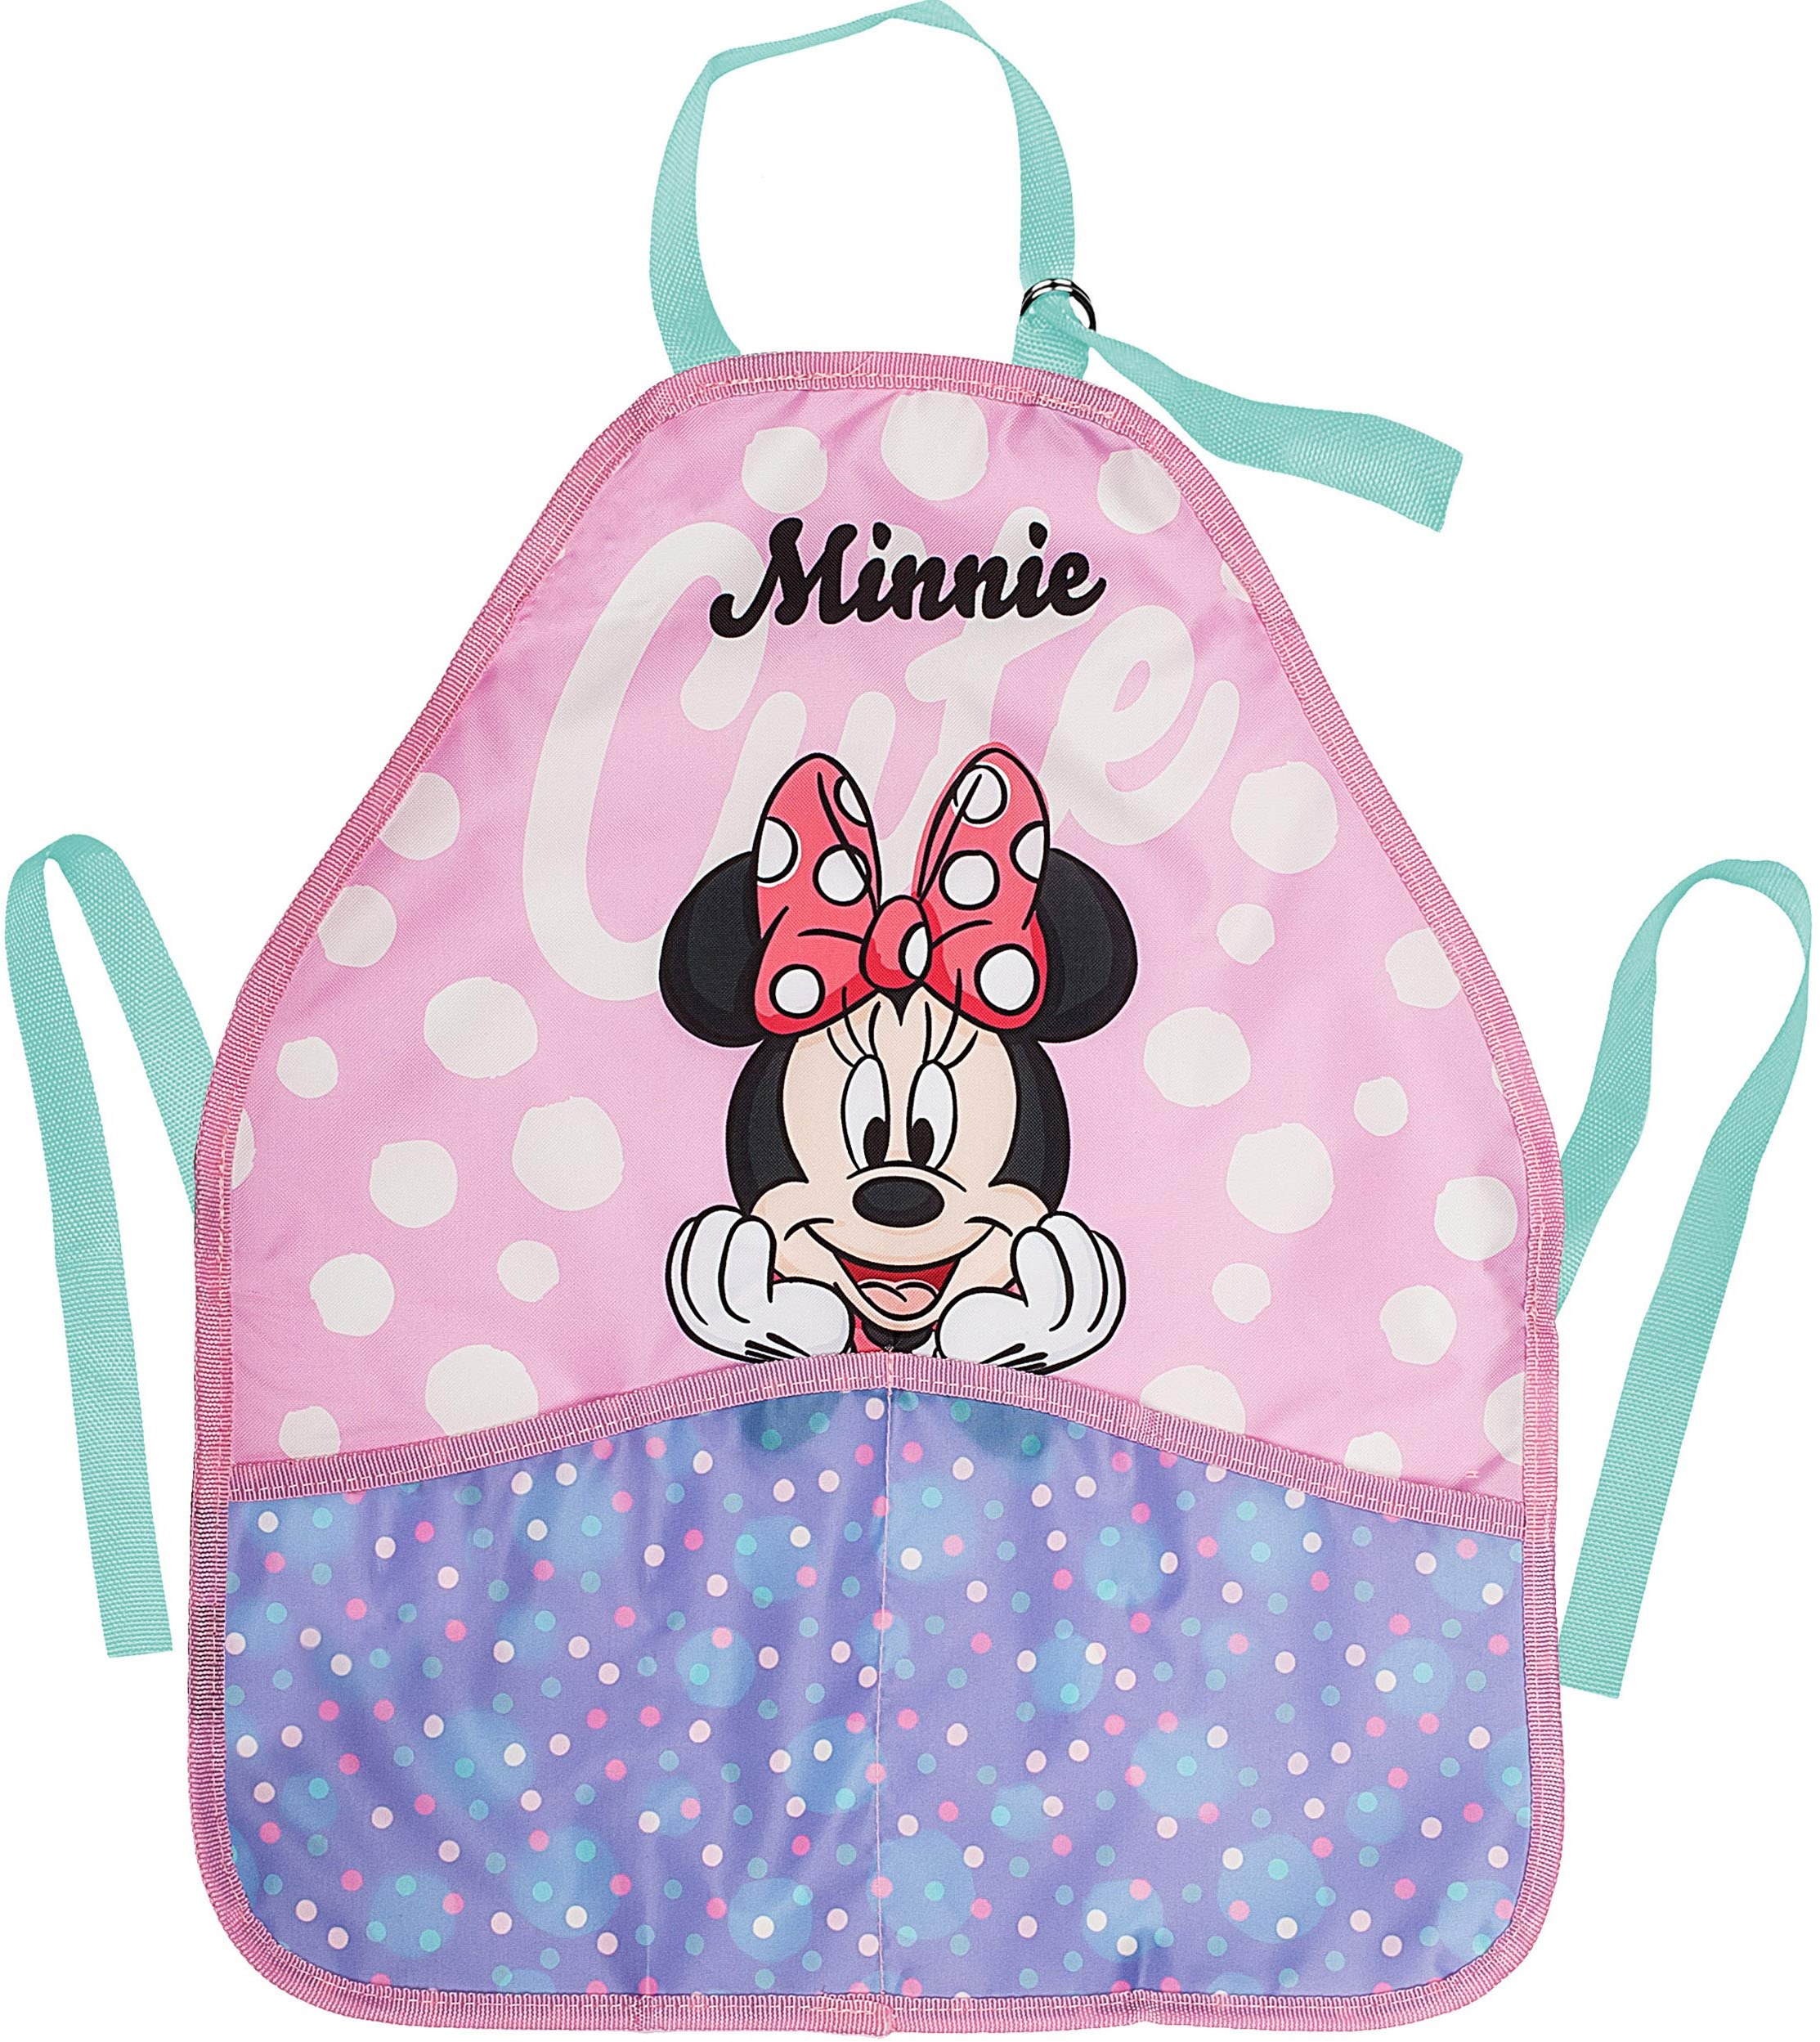 Kinderschürze/Schürze - Disney - Minnie Mouse - größenverstellbar - mit 2 Taschen - mitwachsend - universal/beschichtet & wasserdicht - für Mädchen Mädche..